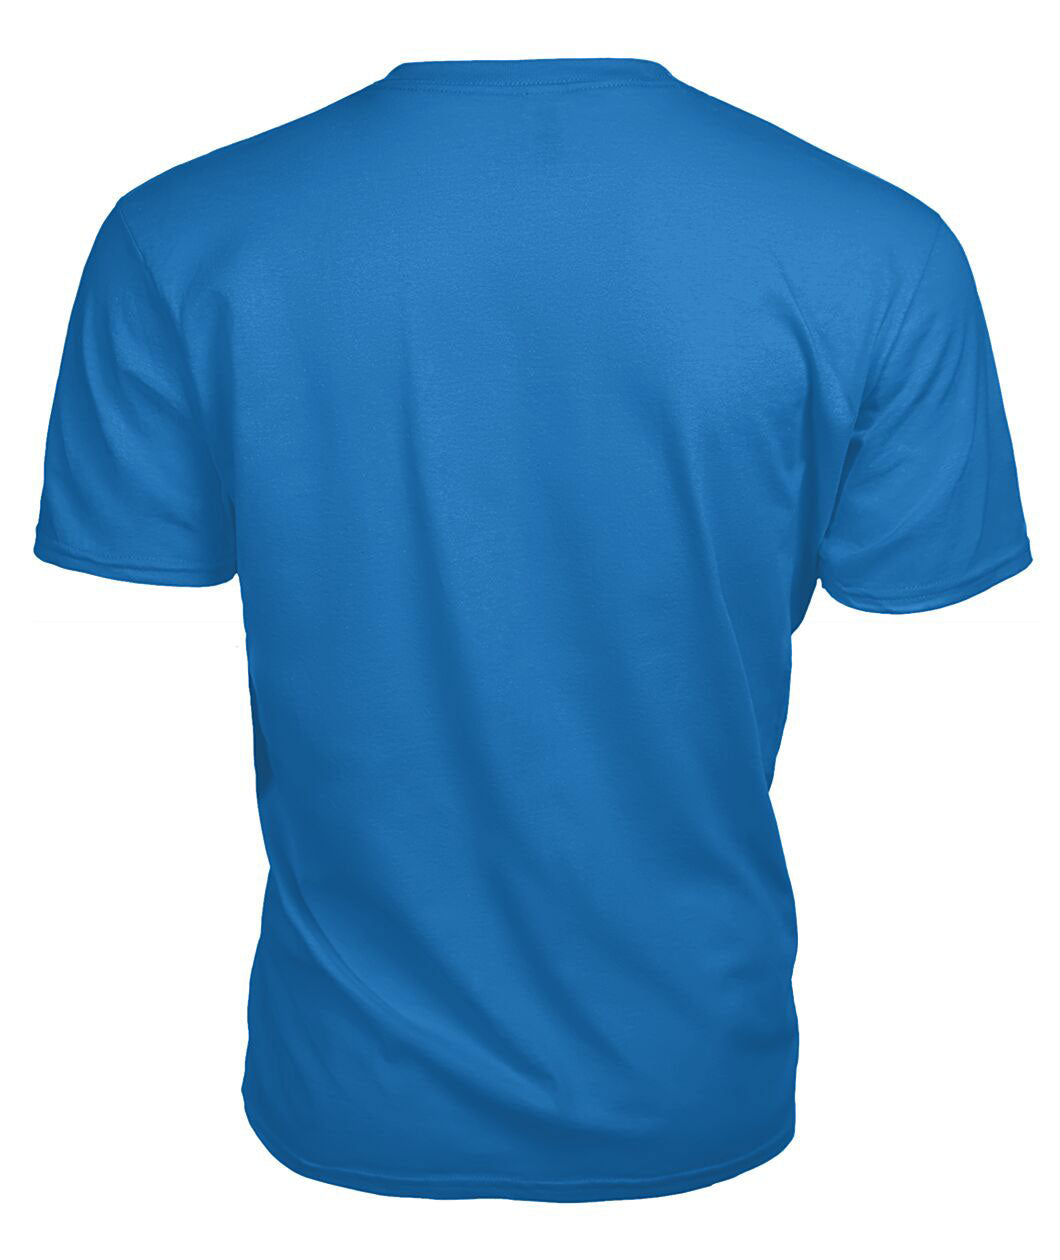 Logie Tartan Crest 2D T-shirt - Blood Runs Through My Veins Style